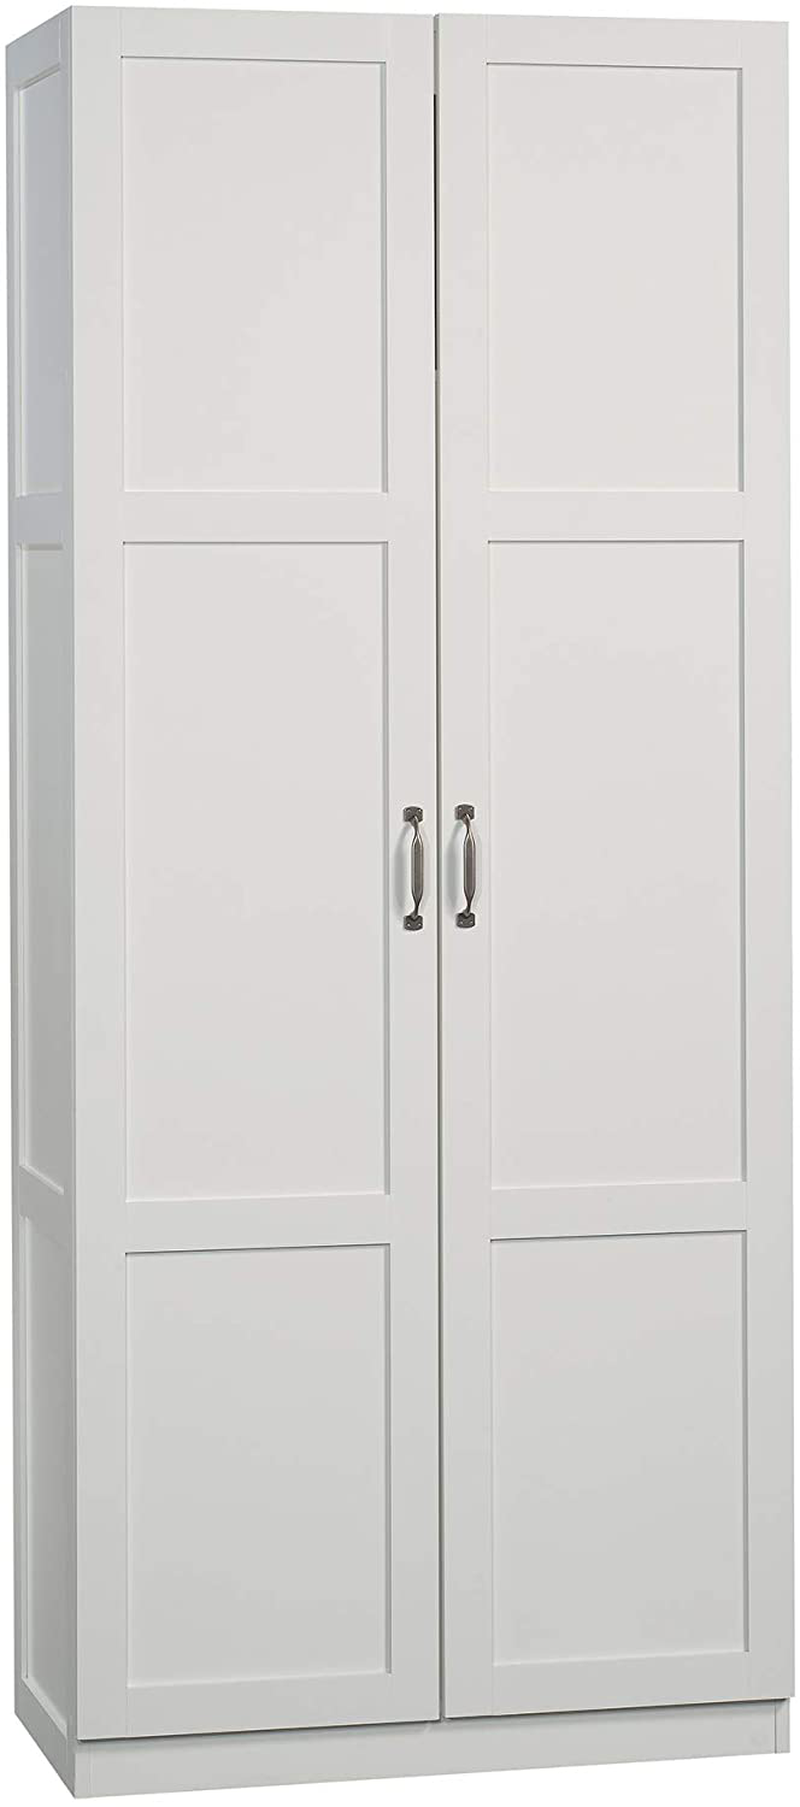 Sauder Storage Cabinet, Highland Oak Finish Home & Garden > Kitchen & Dining > Food Storage Sauder Soft White Finish Storage Cabinet 